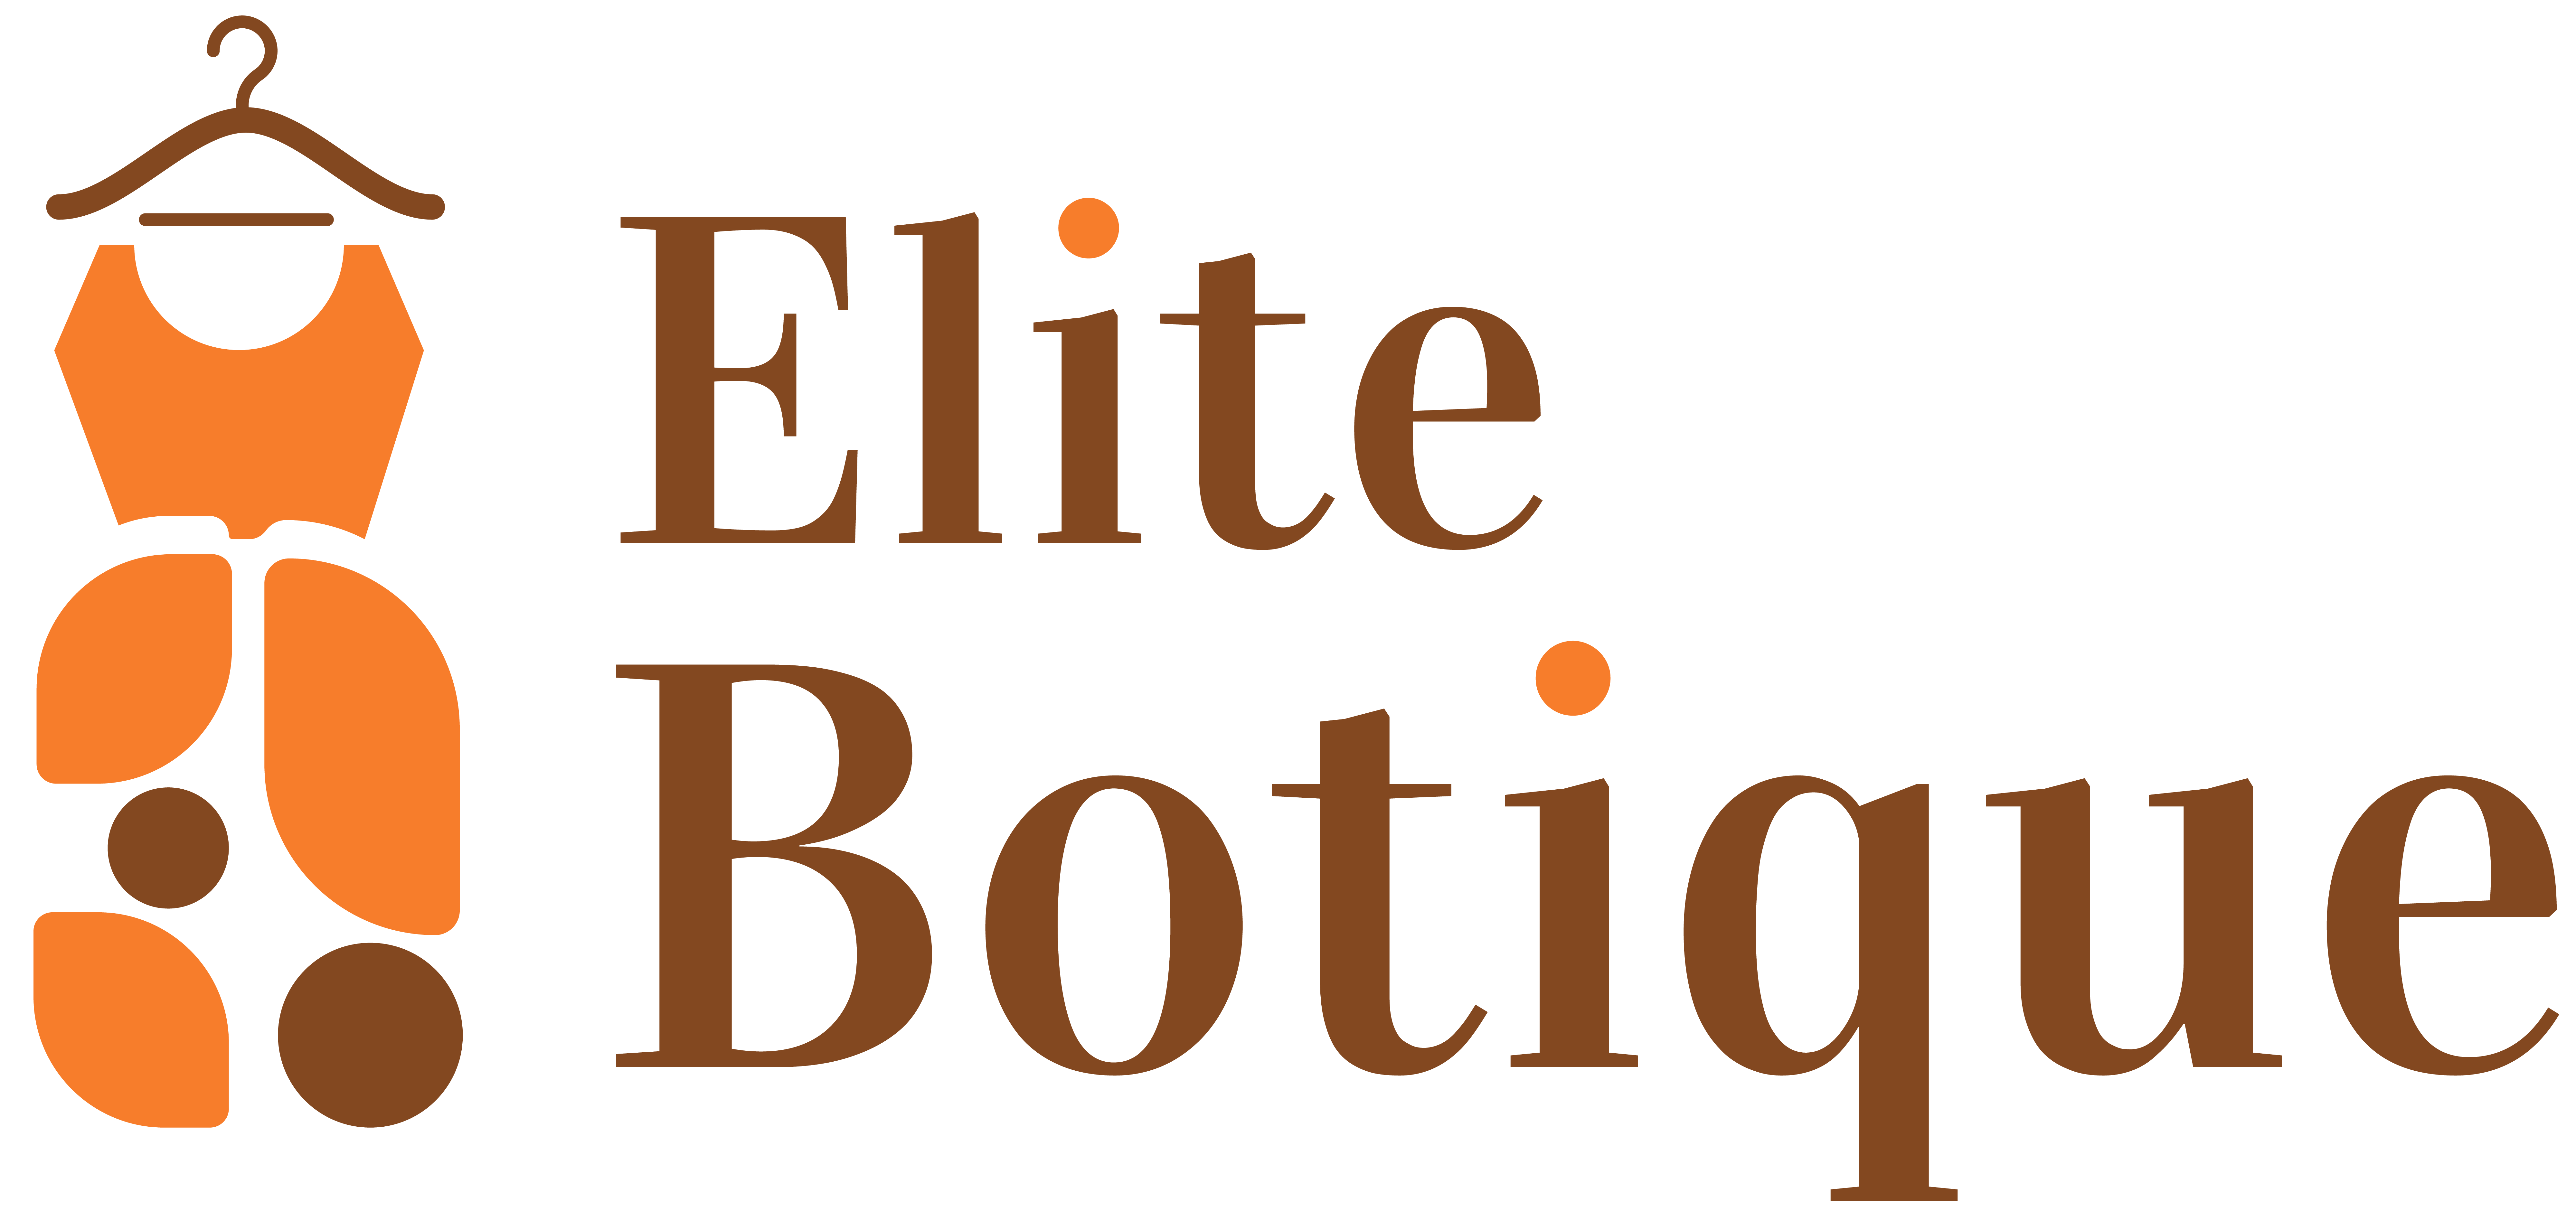 Elitebotique